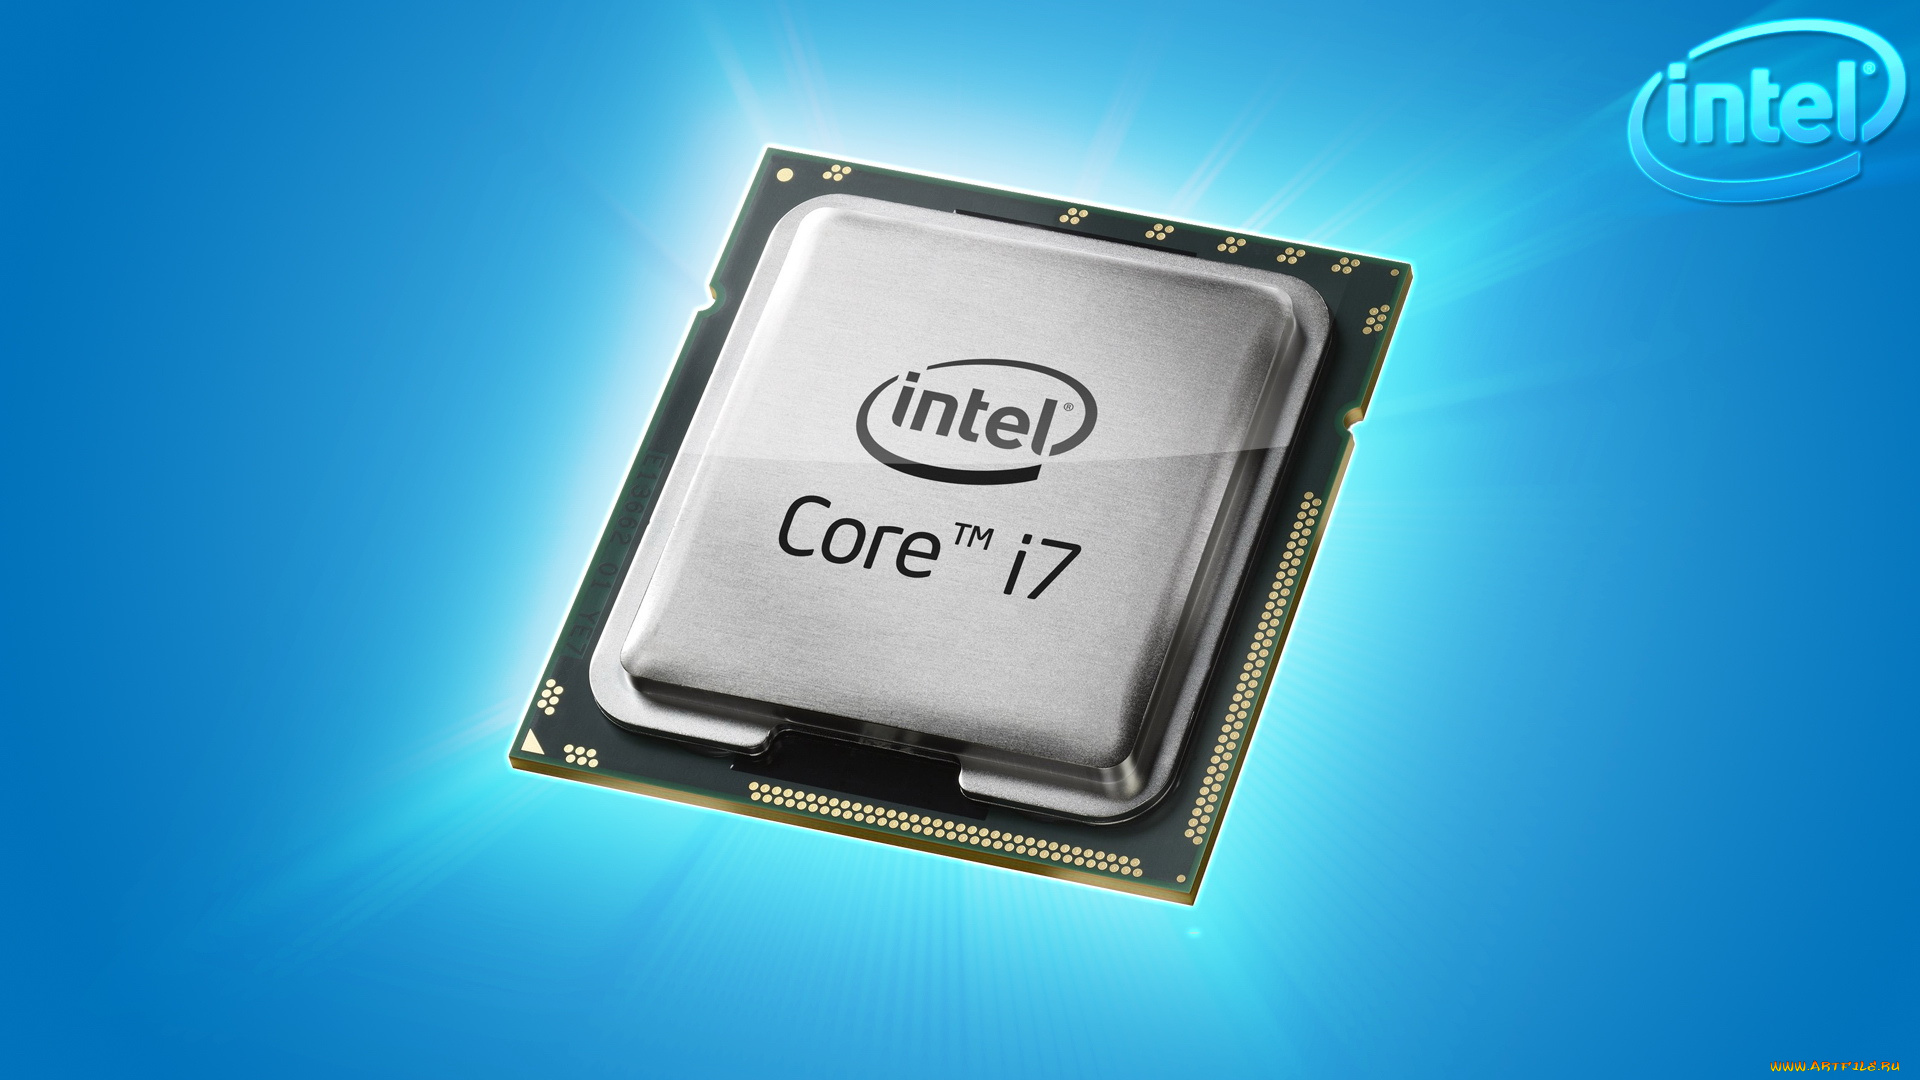 4770 сокет. I7 4770. Core i7 4770. Core i7-4770s. Intel Core i7 4770 сокет.